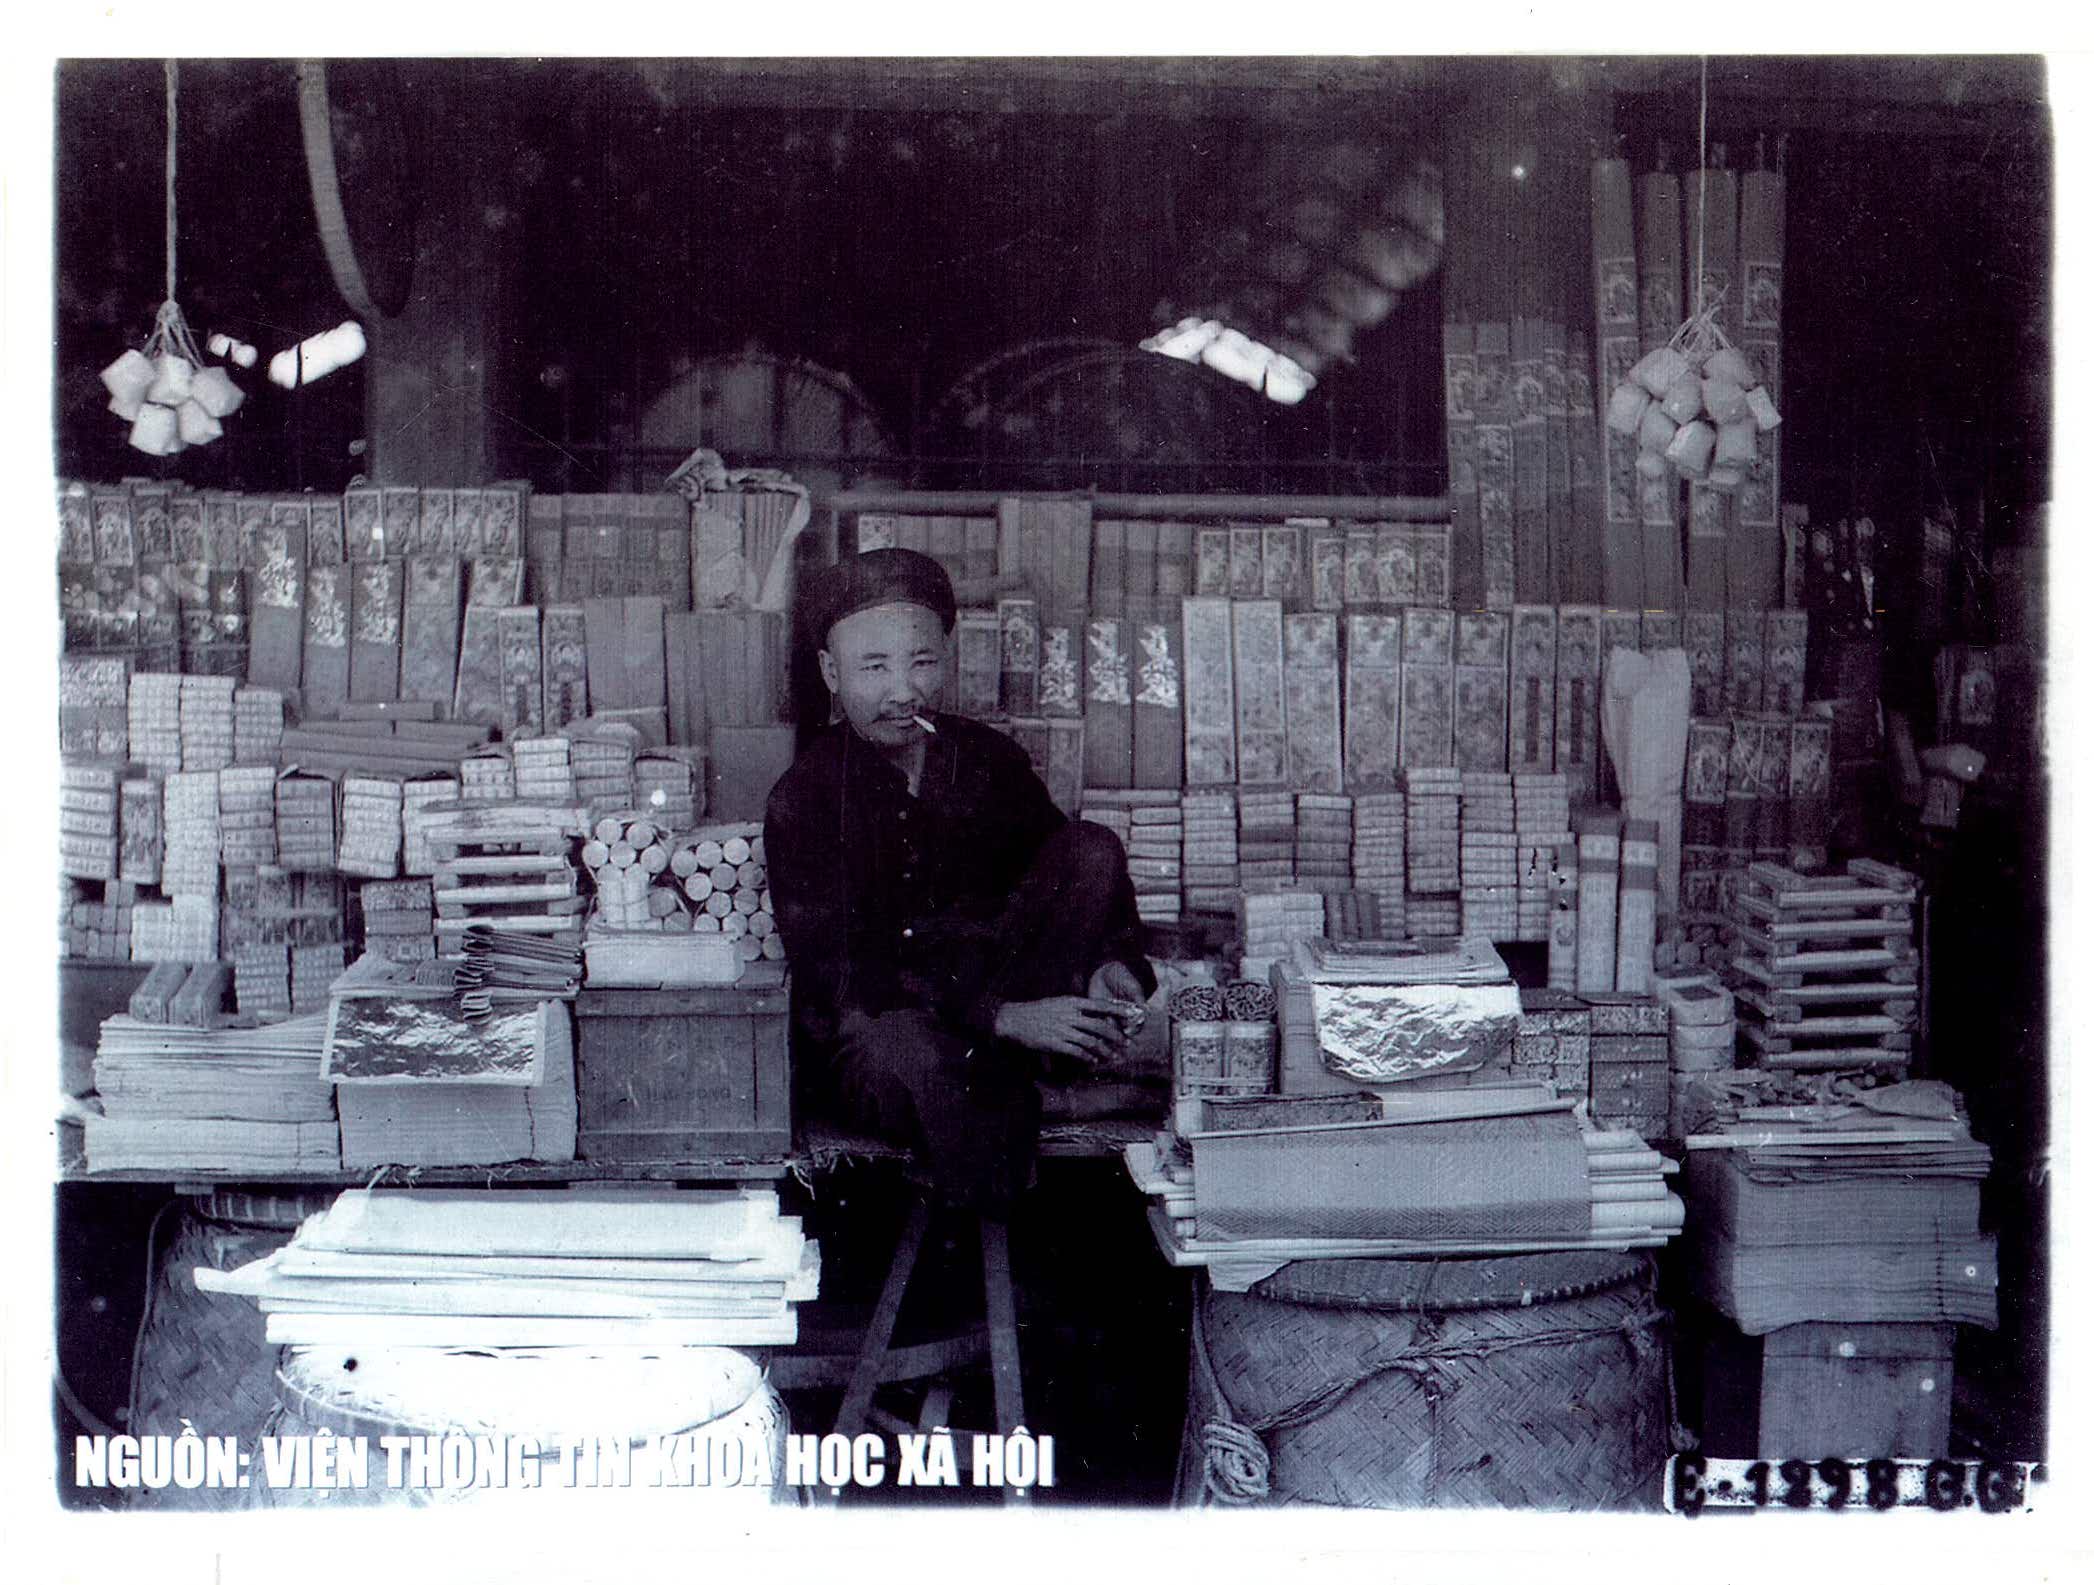 Chợ và phố chợ Hà Nội trăm năm trước qua tư liệu ảnh - 8